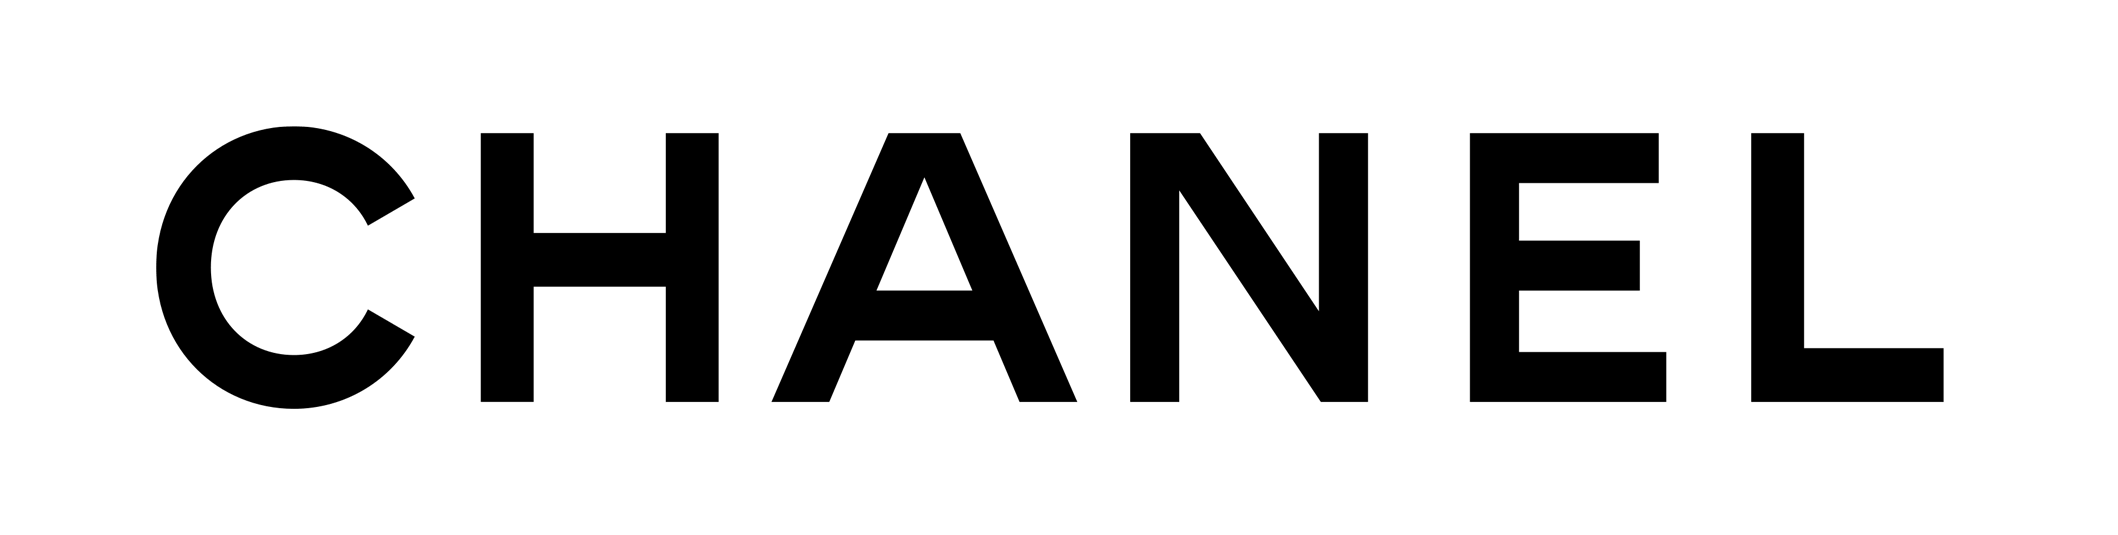 logo nước hoa chanel